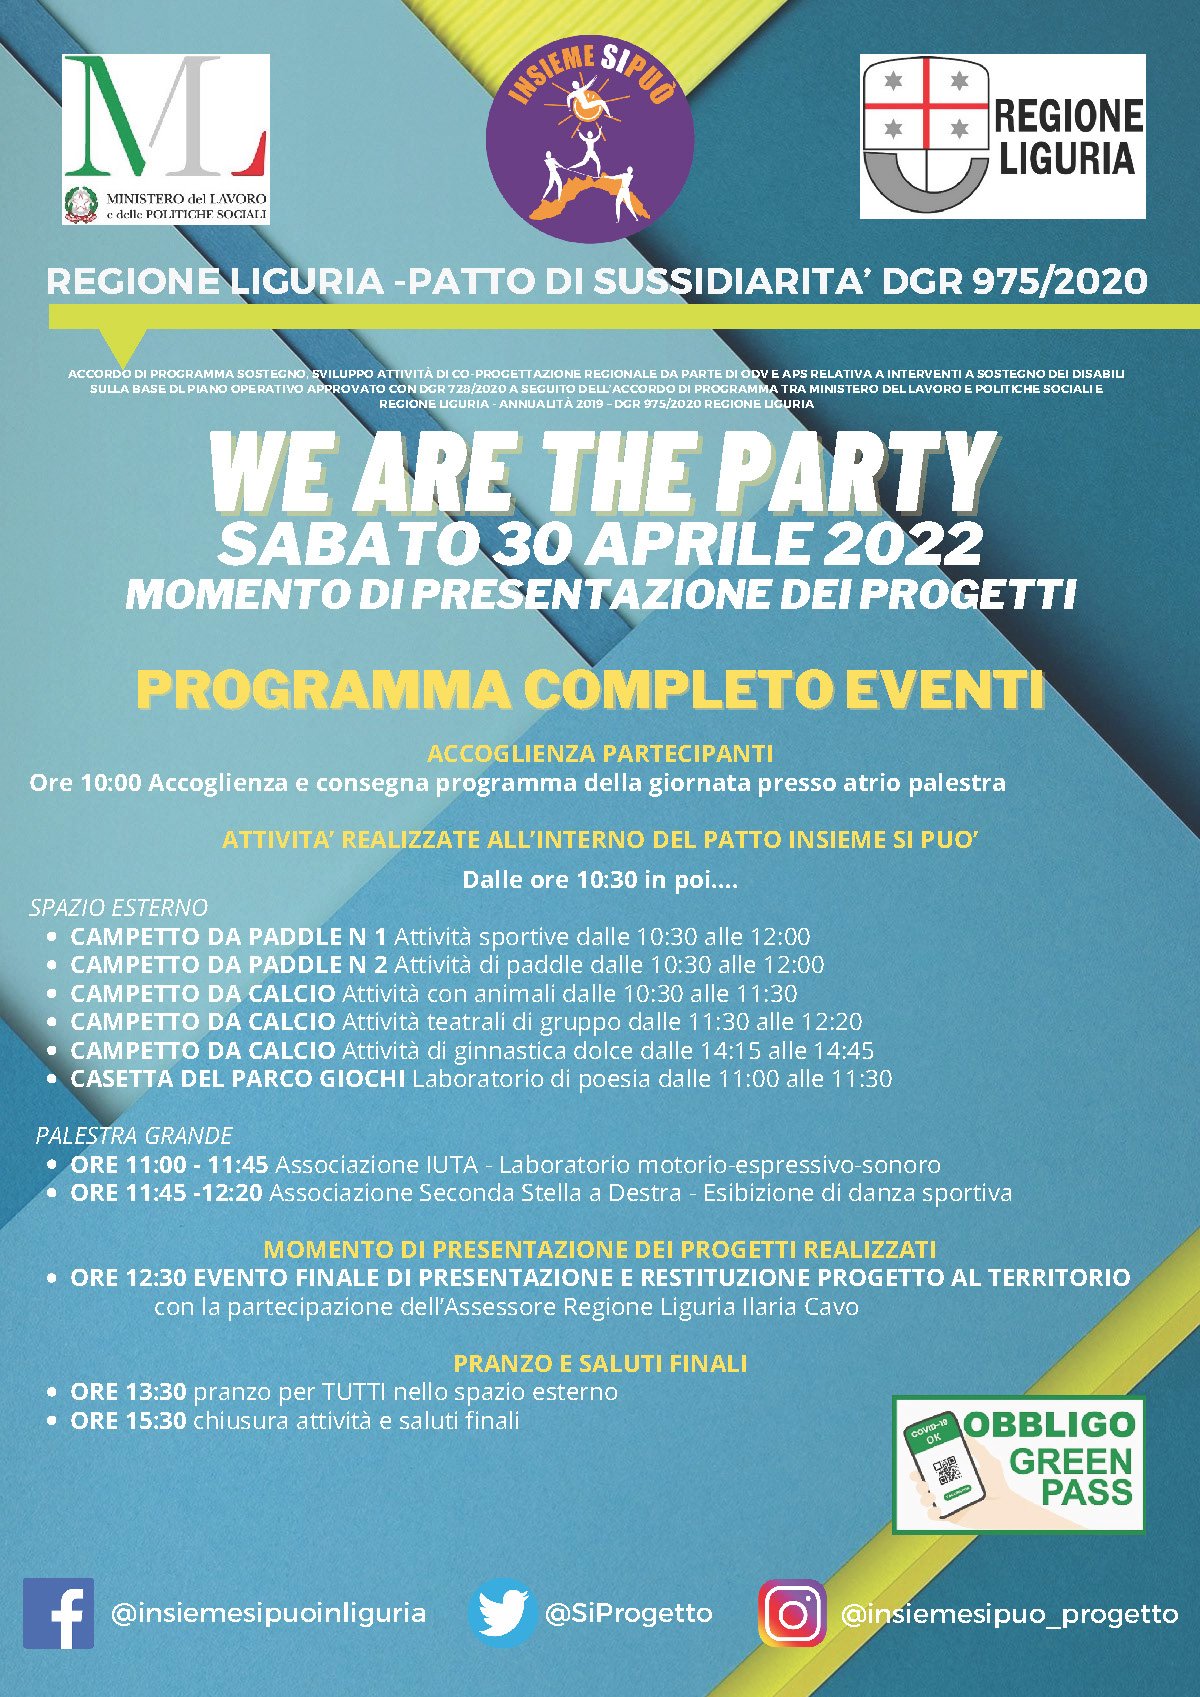 We are the party - Evento conclusivo progetto Insieme si può - Patto di sussidiarietà 2020-21